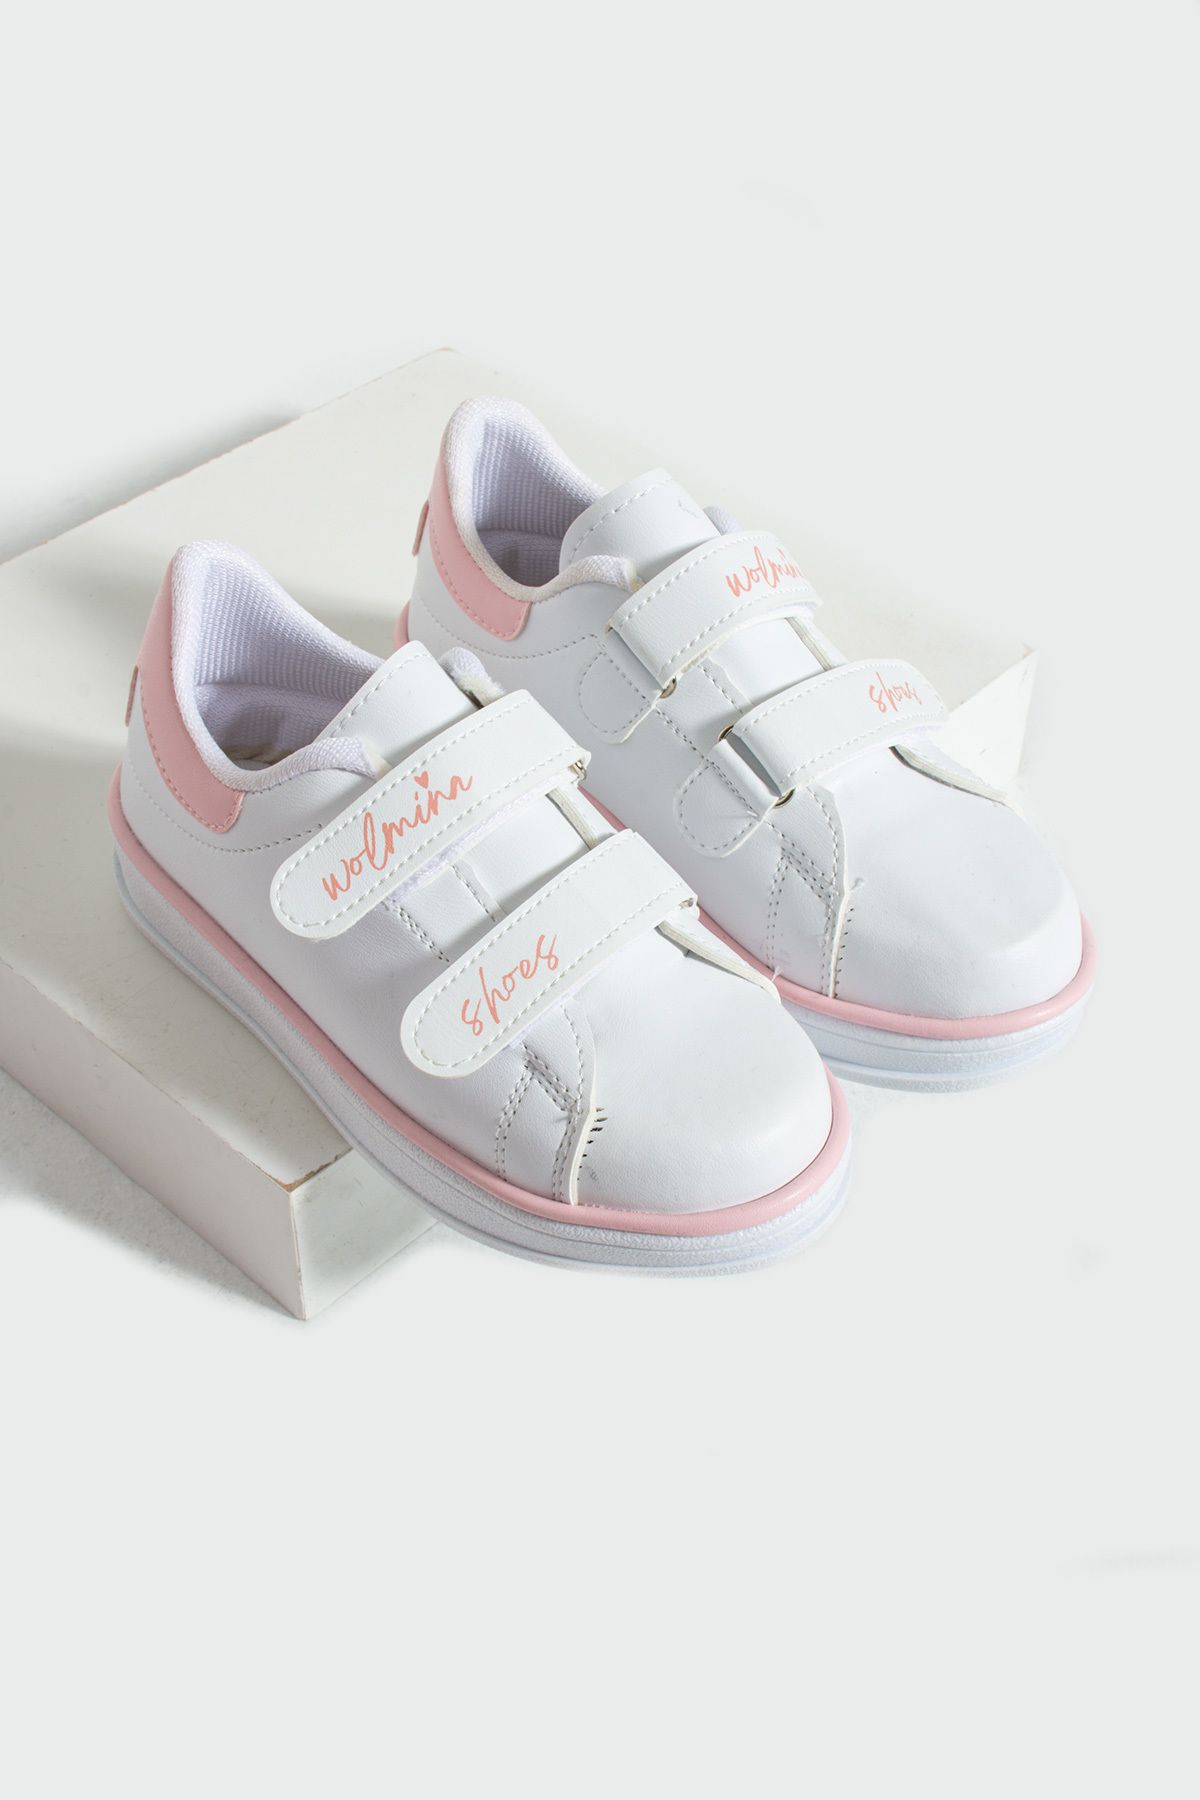 Pembe Potin Çocuk Unisex Beyaz Pudra Sneakers Cırtlı Bantlı Günlük Rahat Spor Ayakkabı